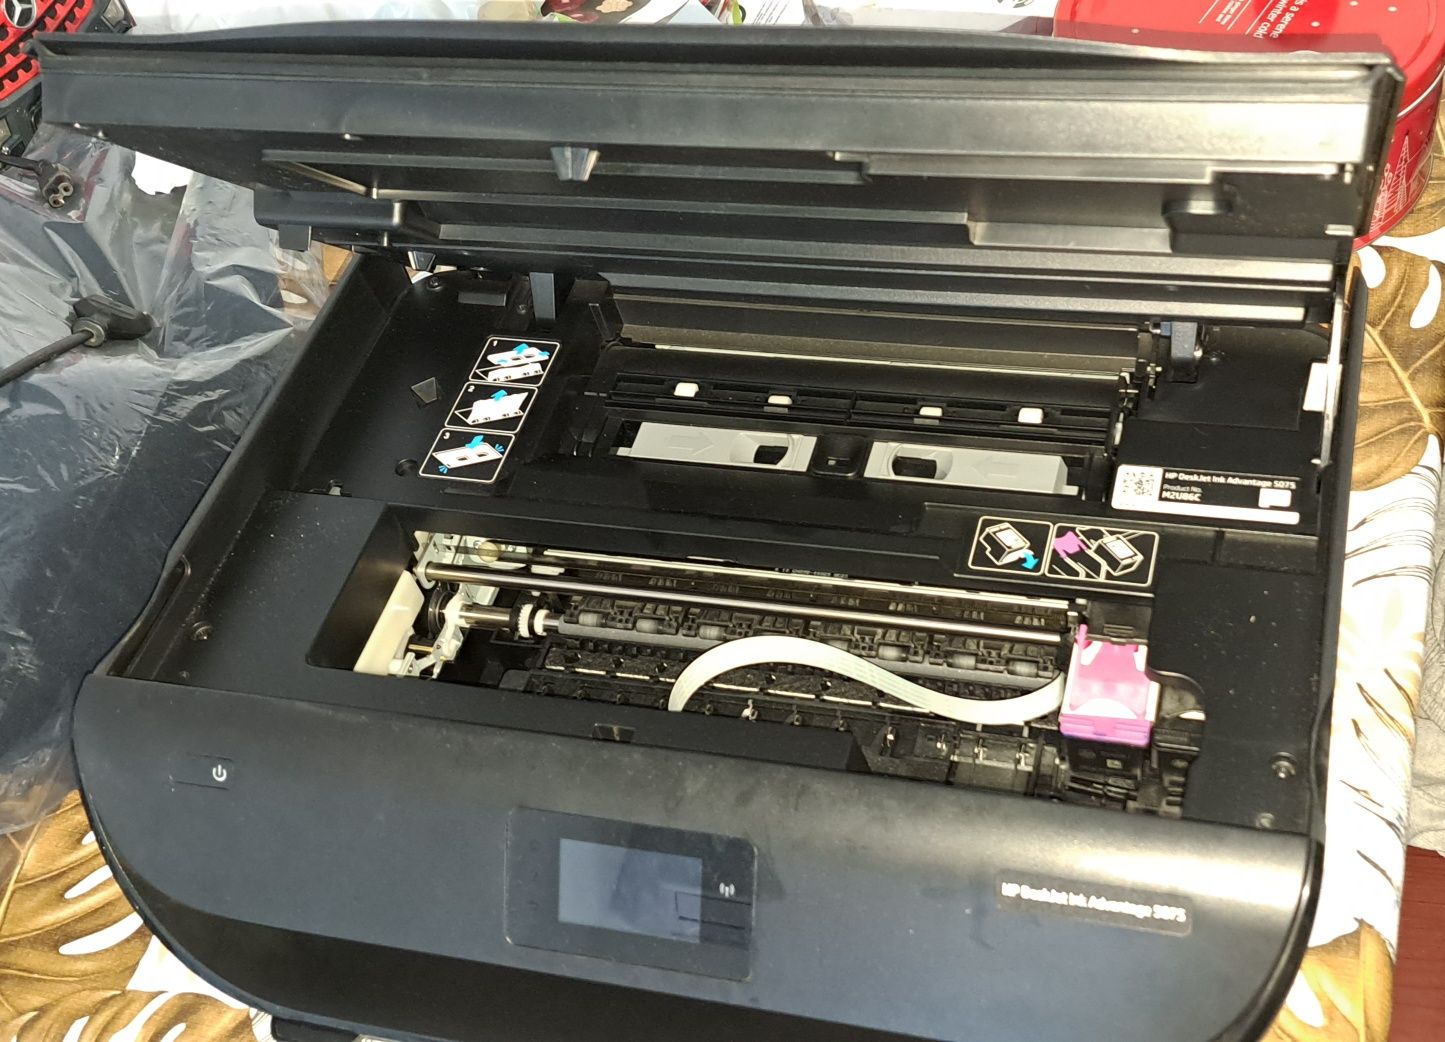 Imprimantă multifuncțională HP 5075 +Kit reumplere cartușe HP652